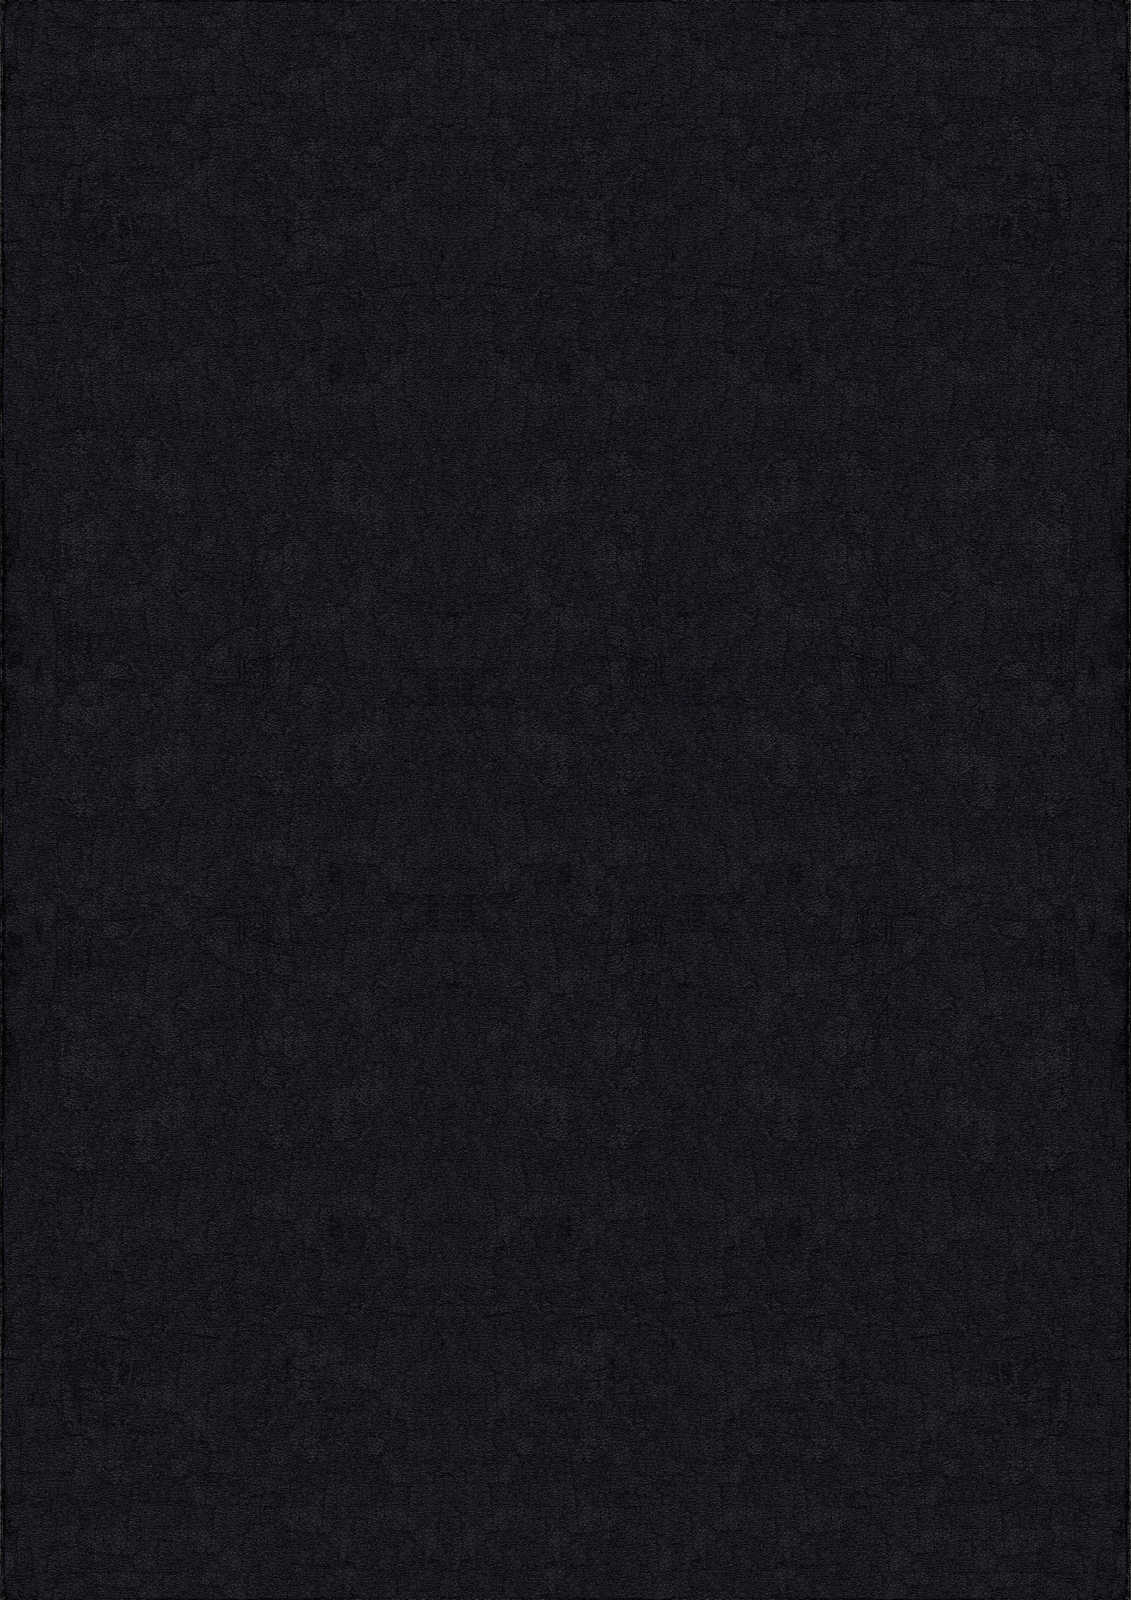             Tapis velouté à poils longs noir - 110 x 60 cm
        